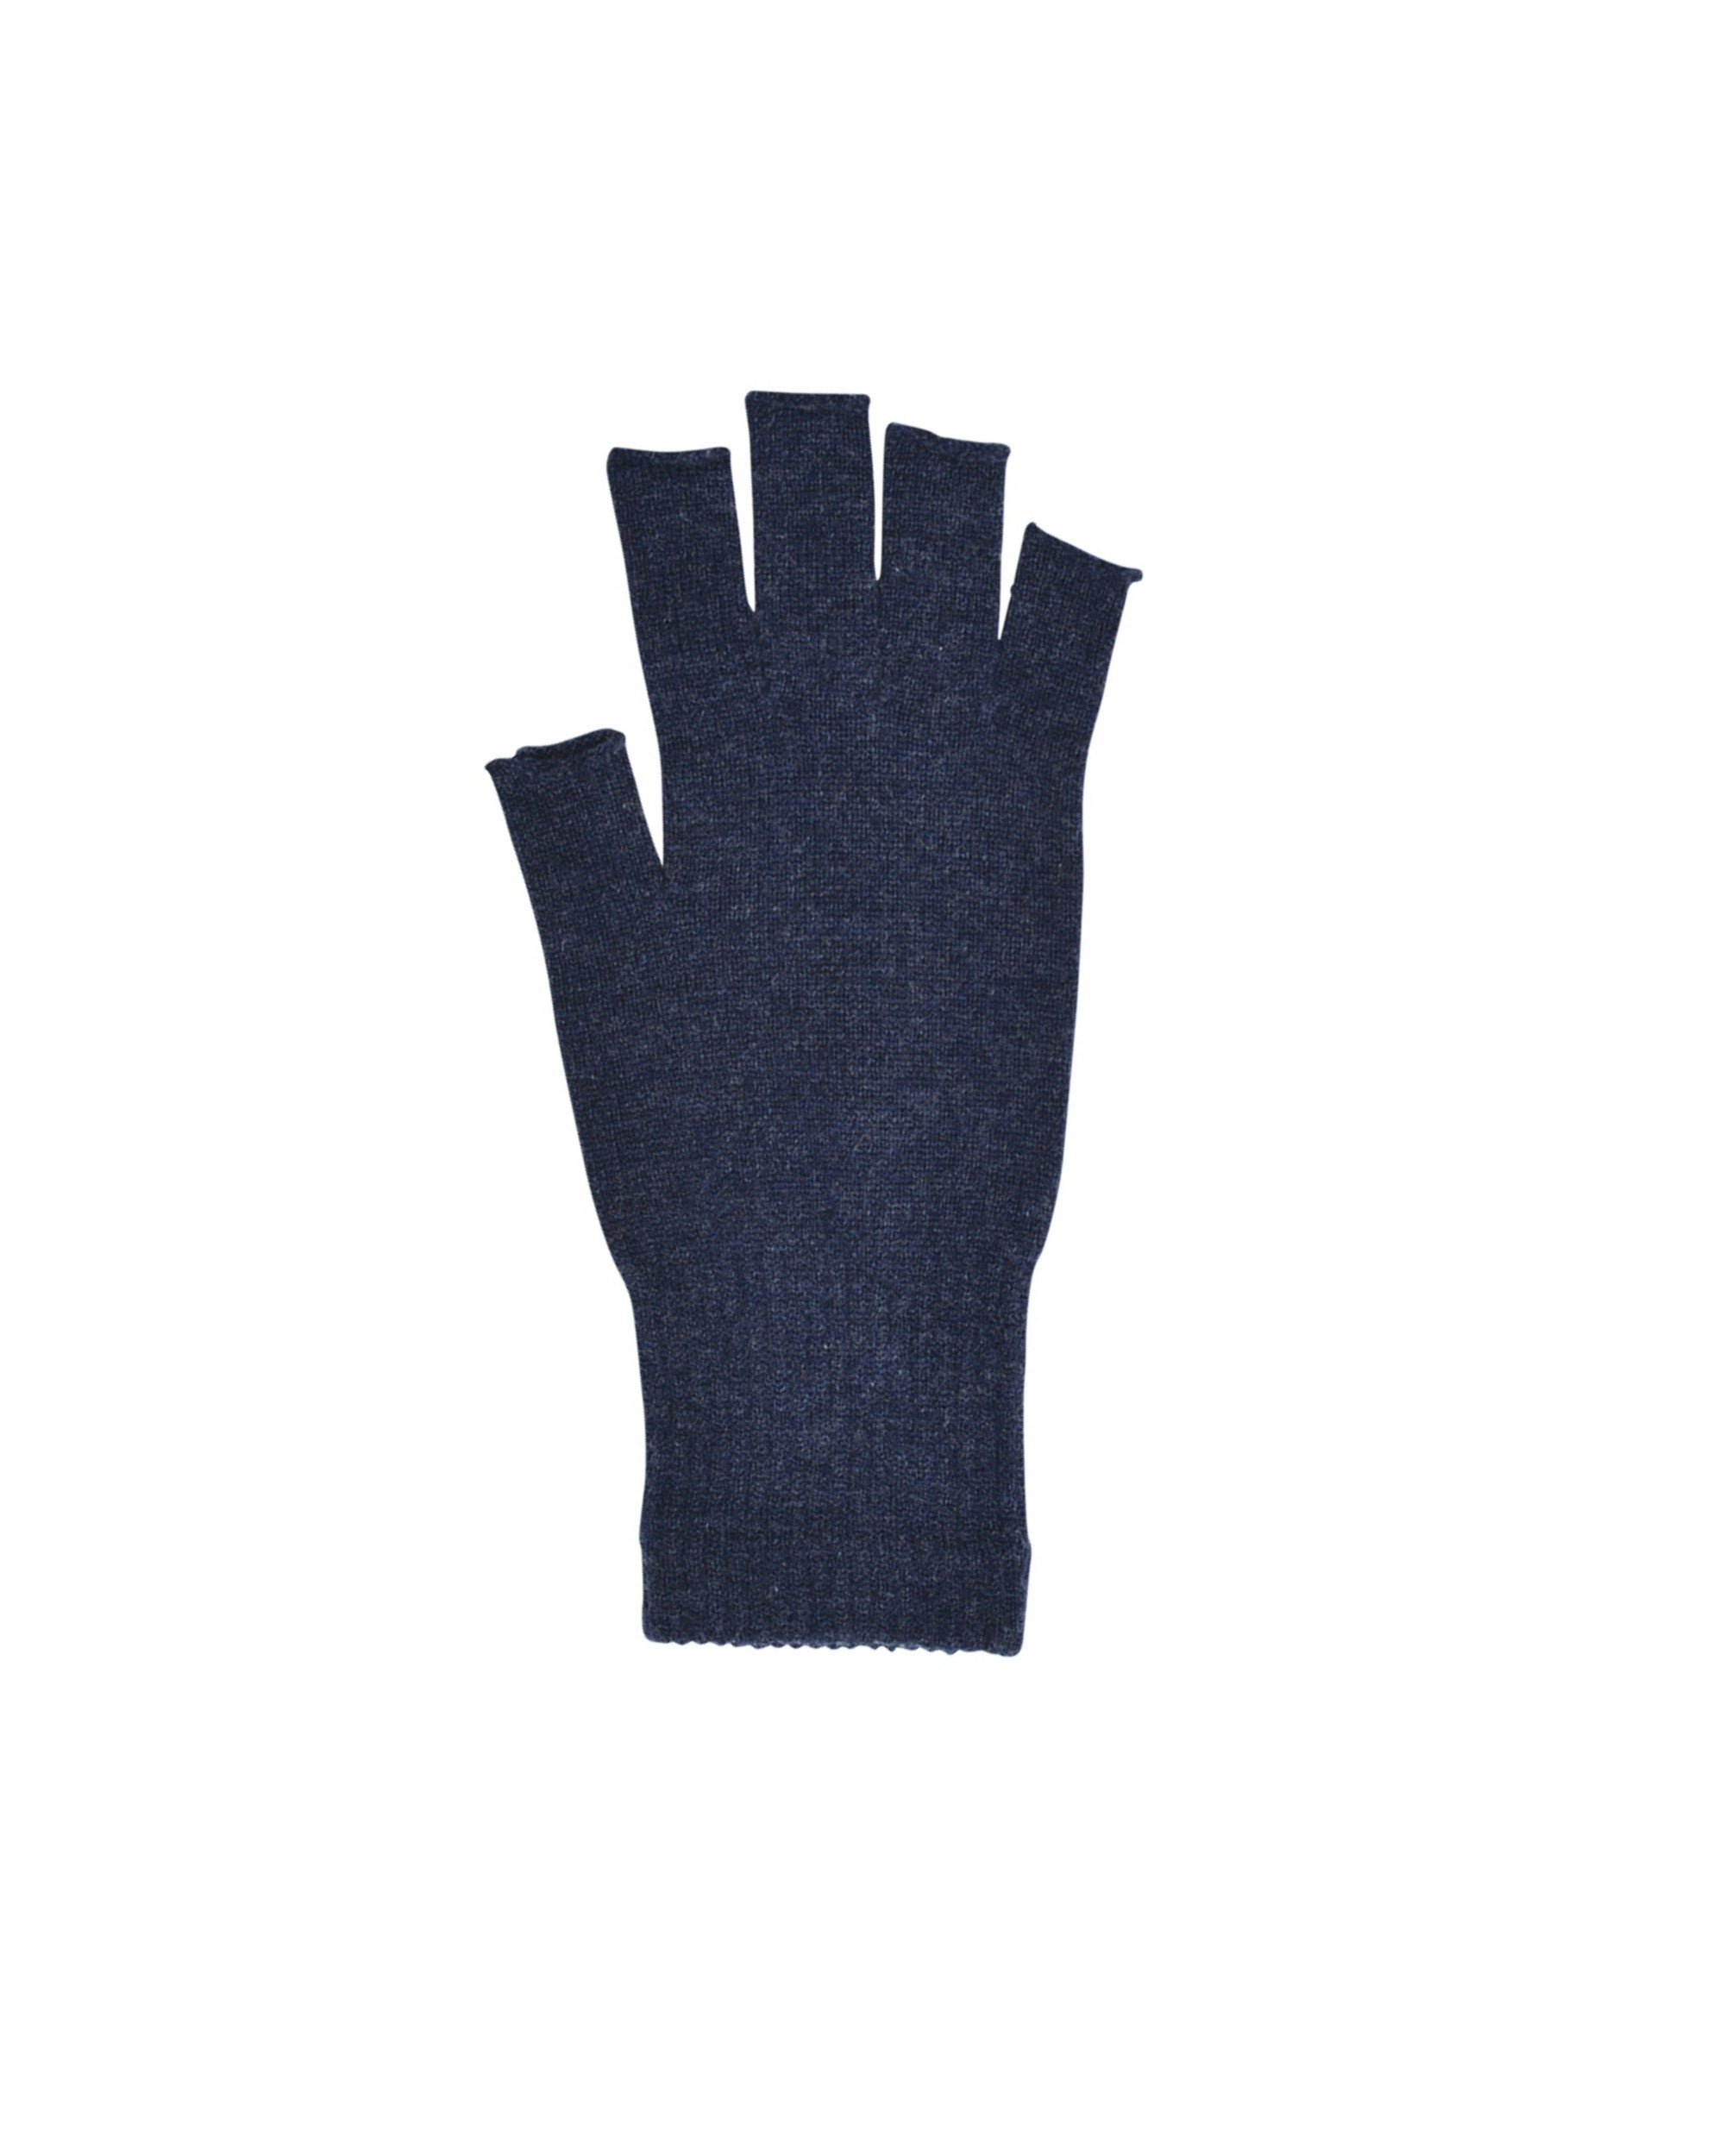 japanese made merino wool fingerless gloves